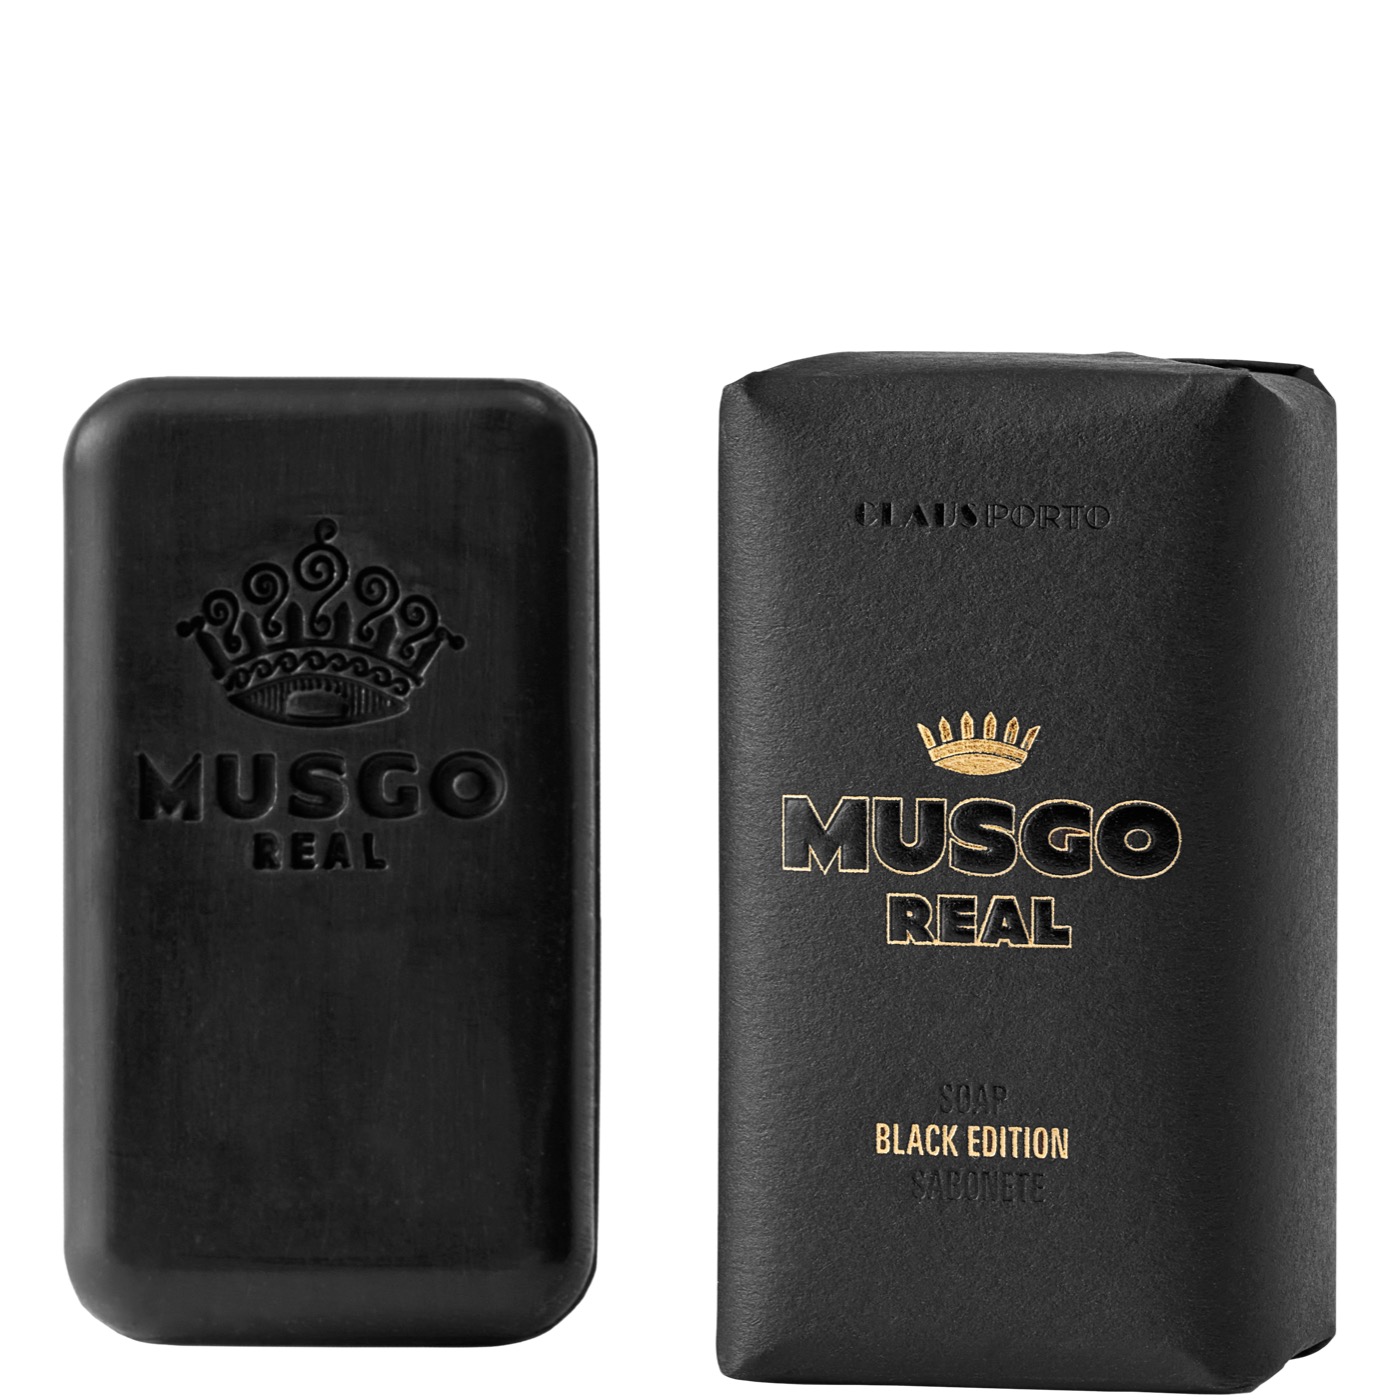 Mini Soap Black Edition